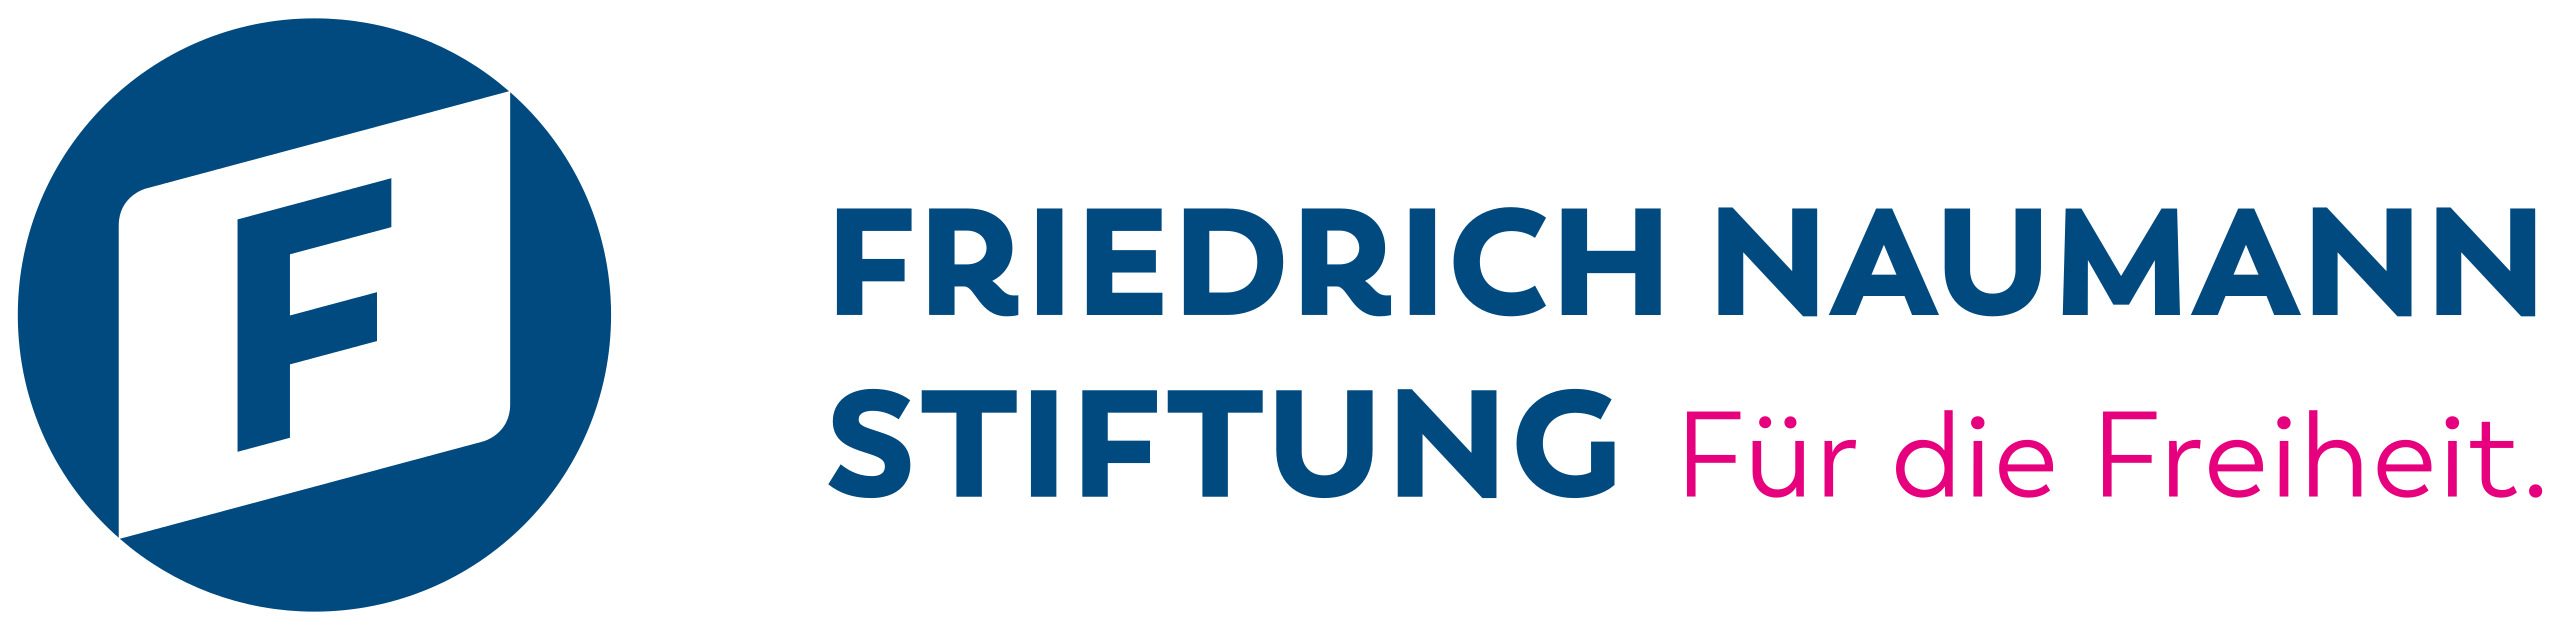 Friedrich-Naumann-Stiftung_für_die_Freiheit_logo.svg